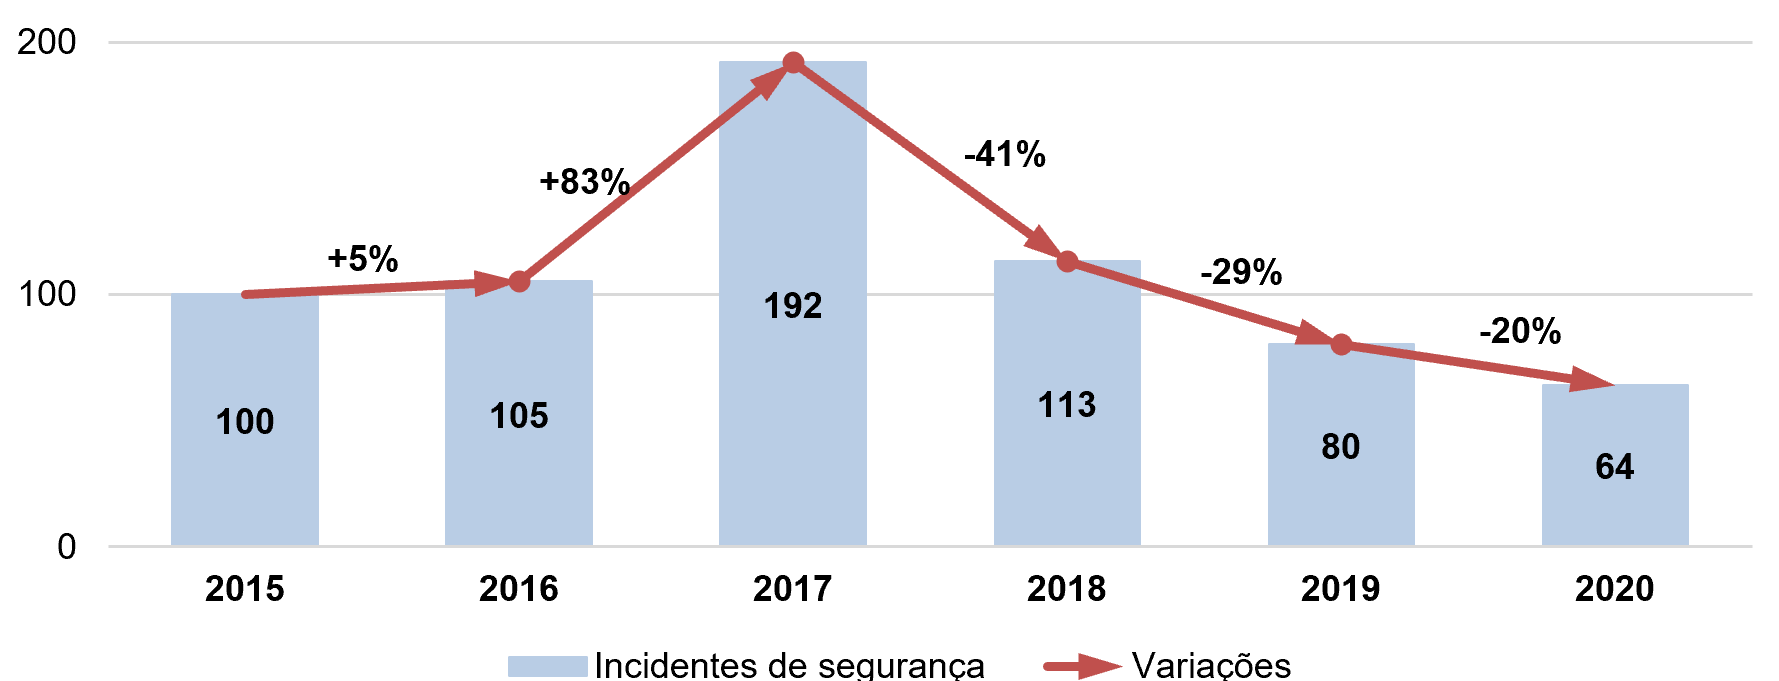 Gráfico 1 - Valor anual de incidentes de segurança notificados durante 2015-2020.